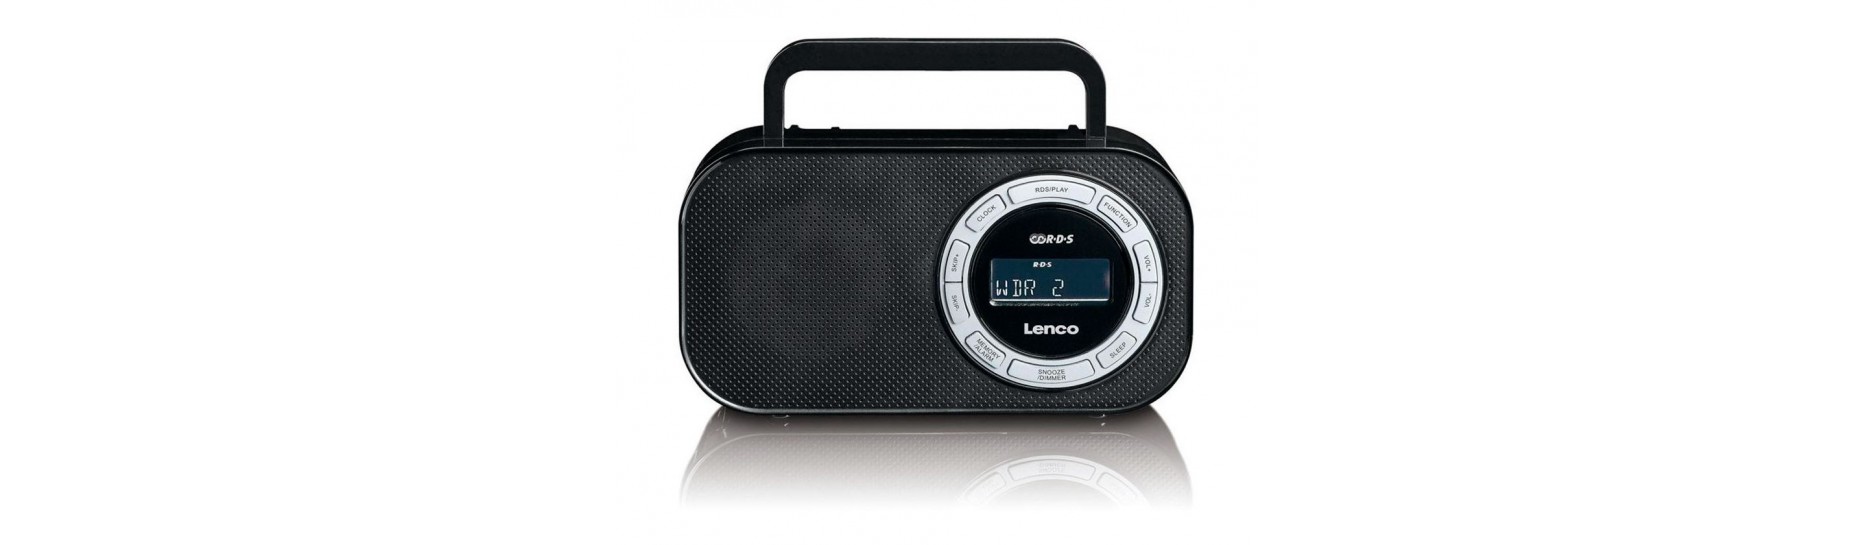 Radios | Comprar Radios